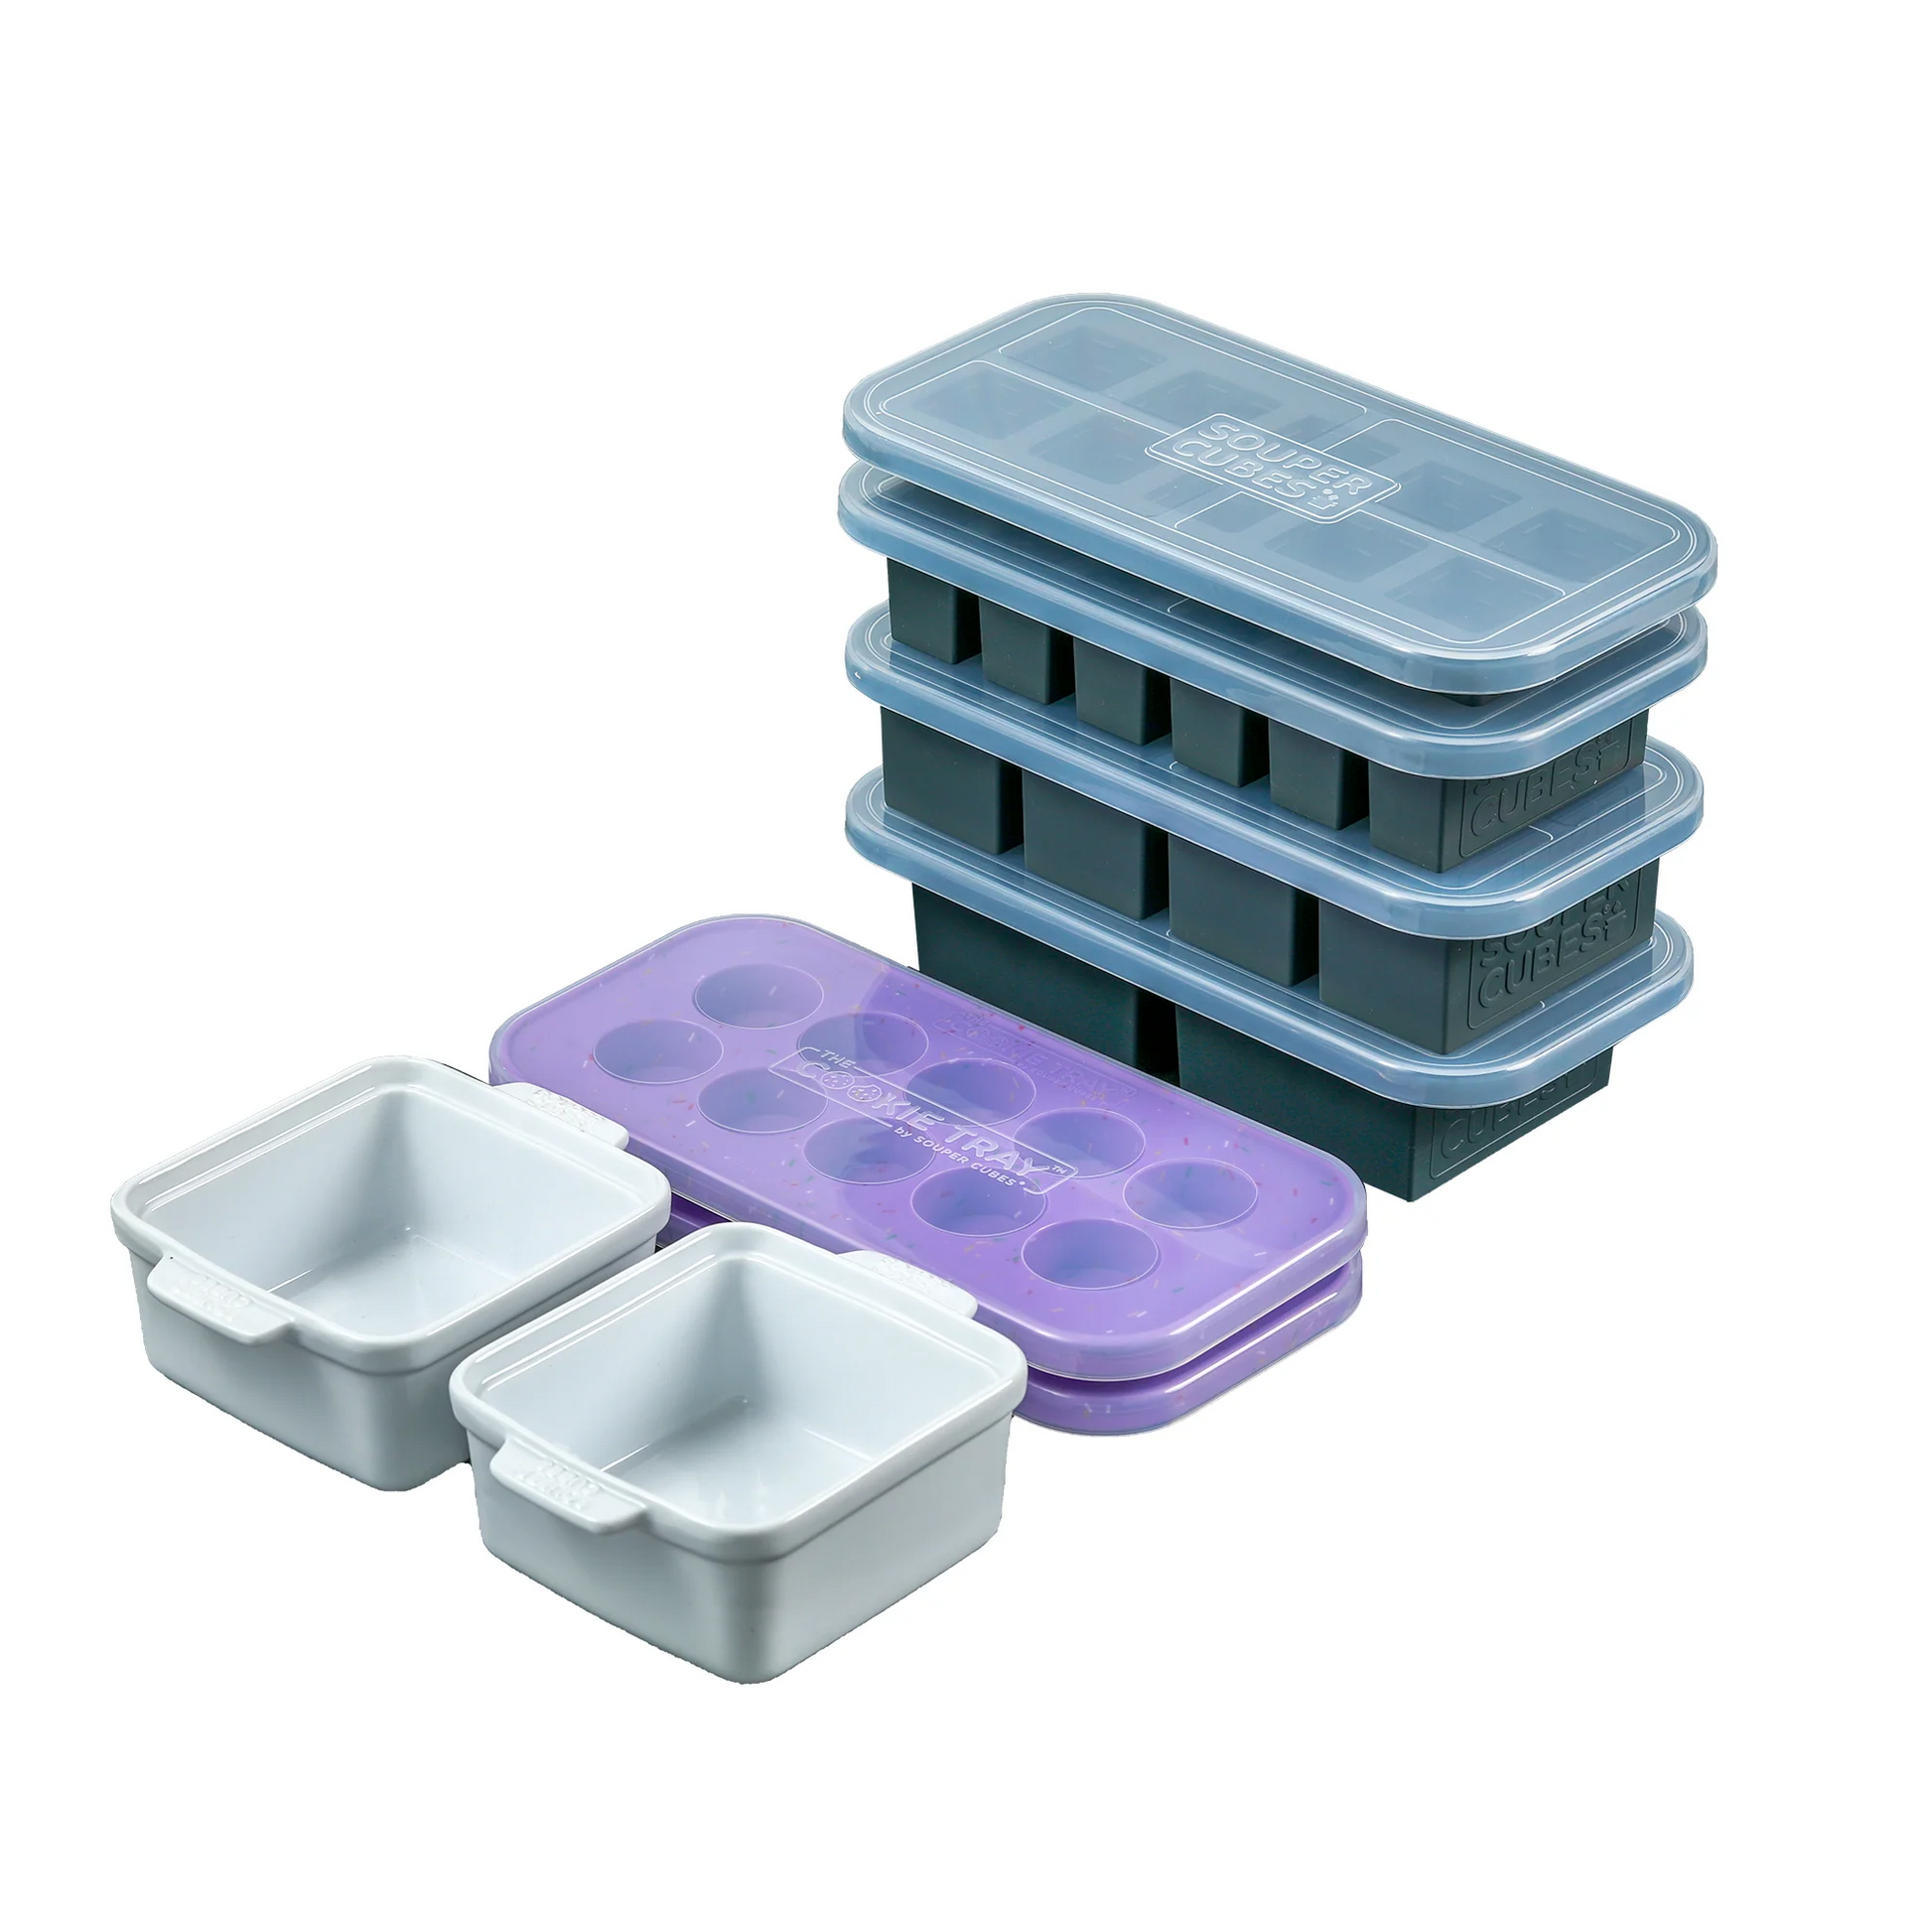 1-Cup Food Tray (Aqua), Souper Cubes